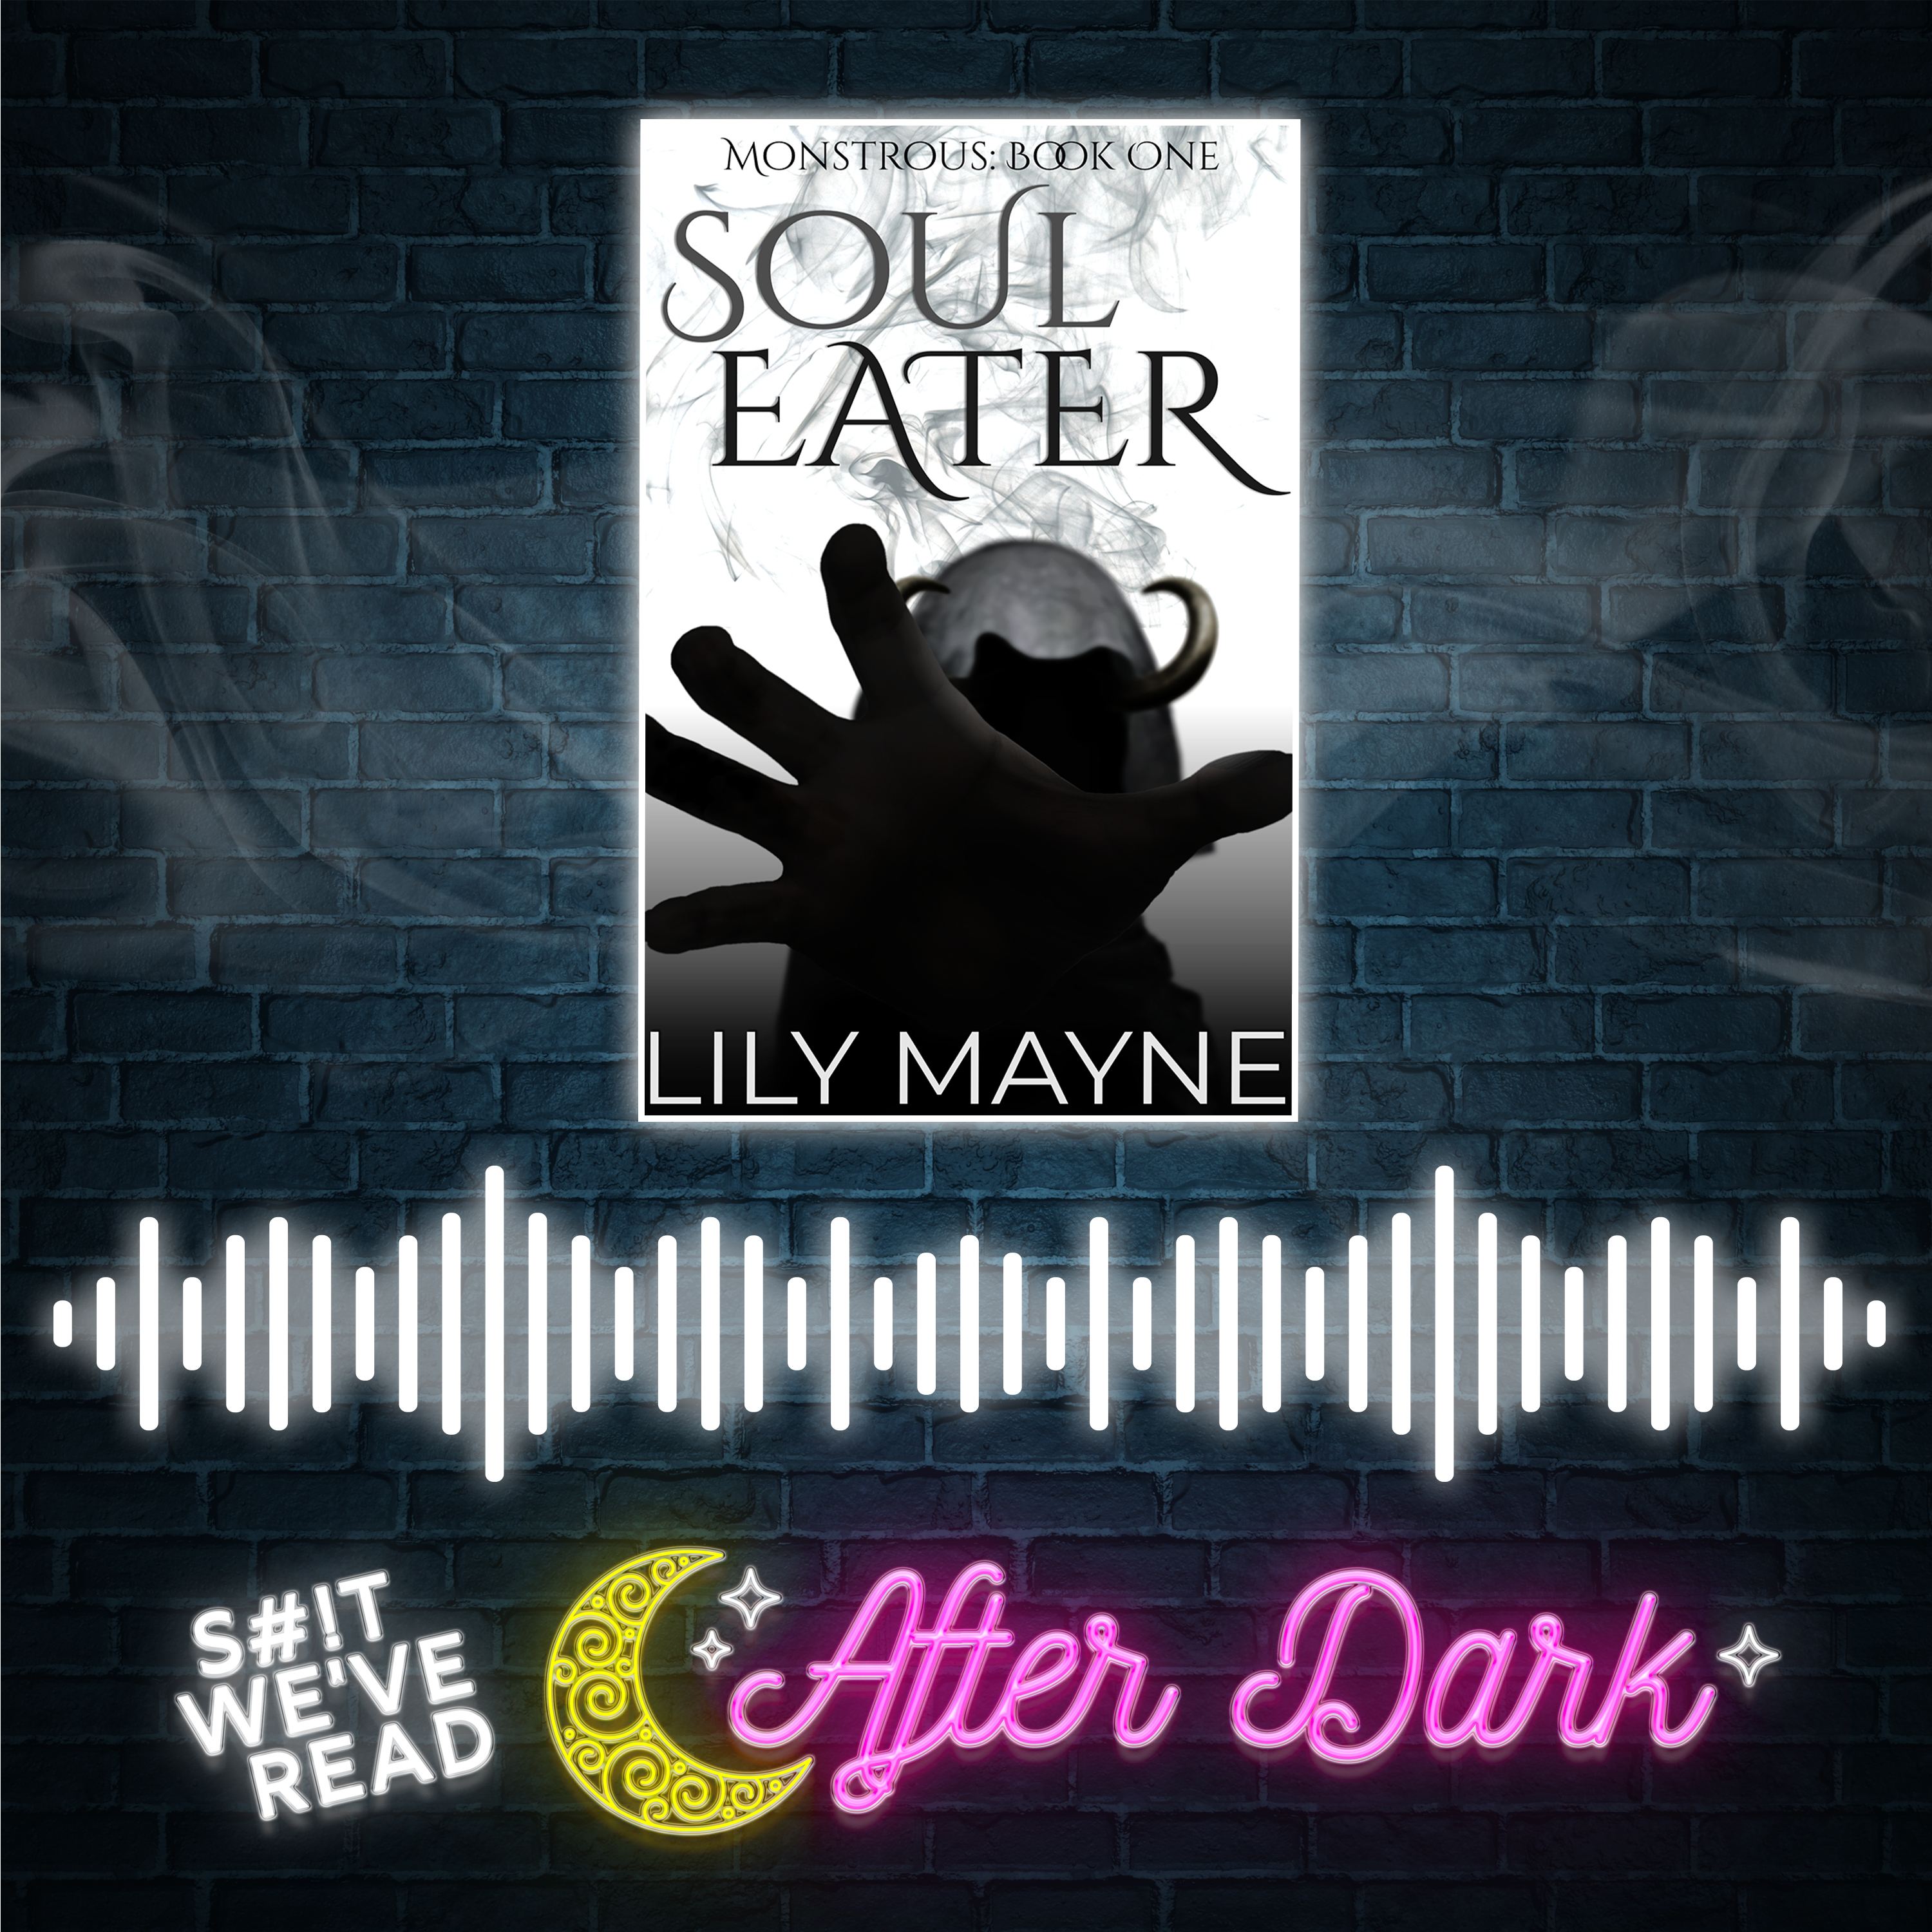 After Dark: Soul Eater